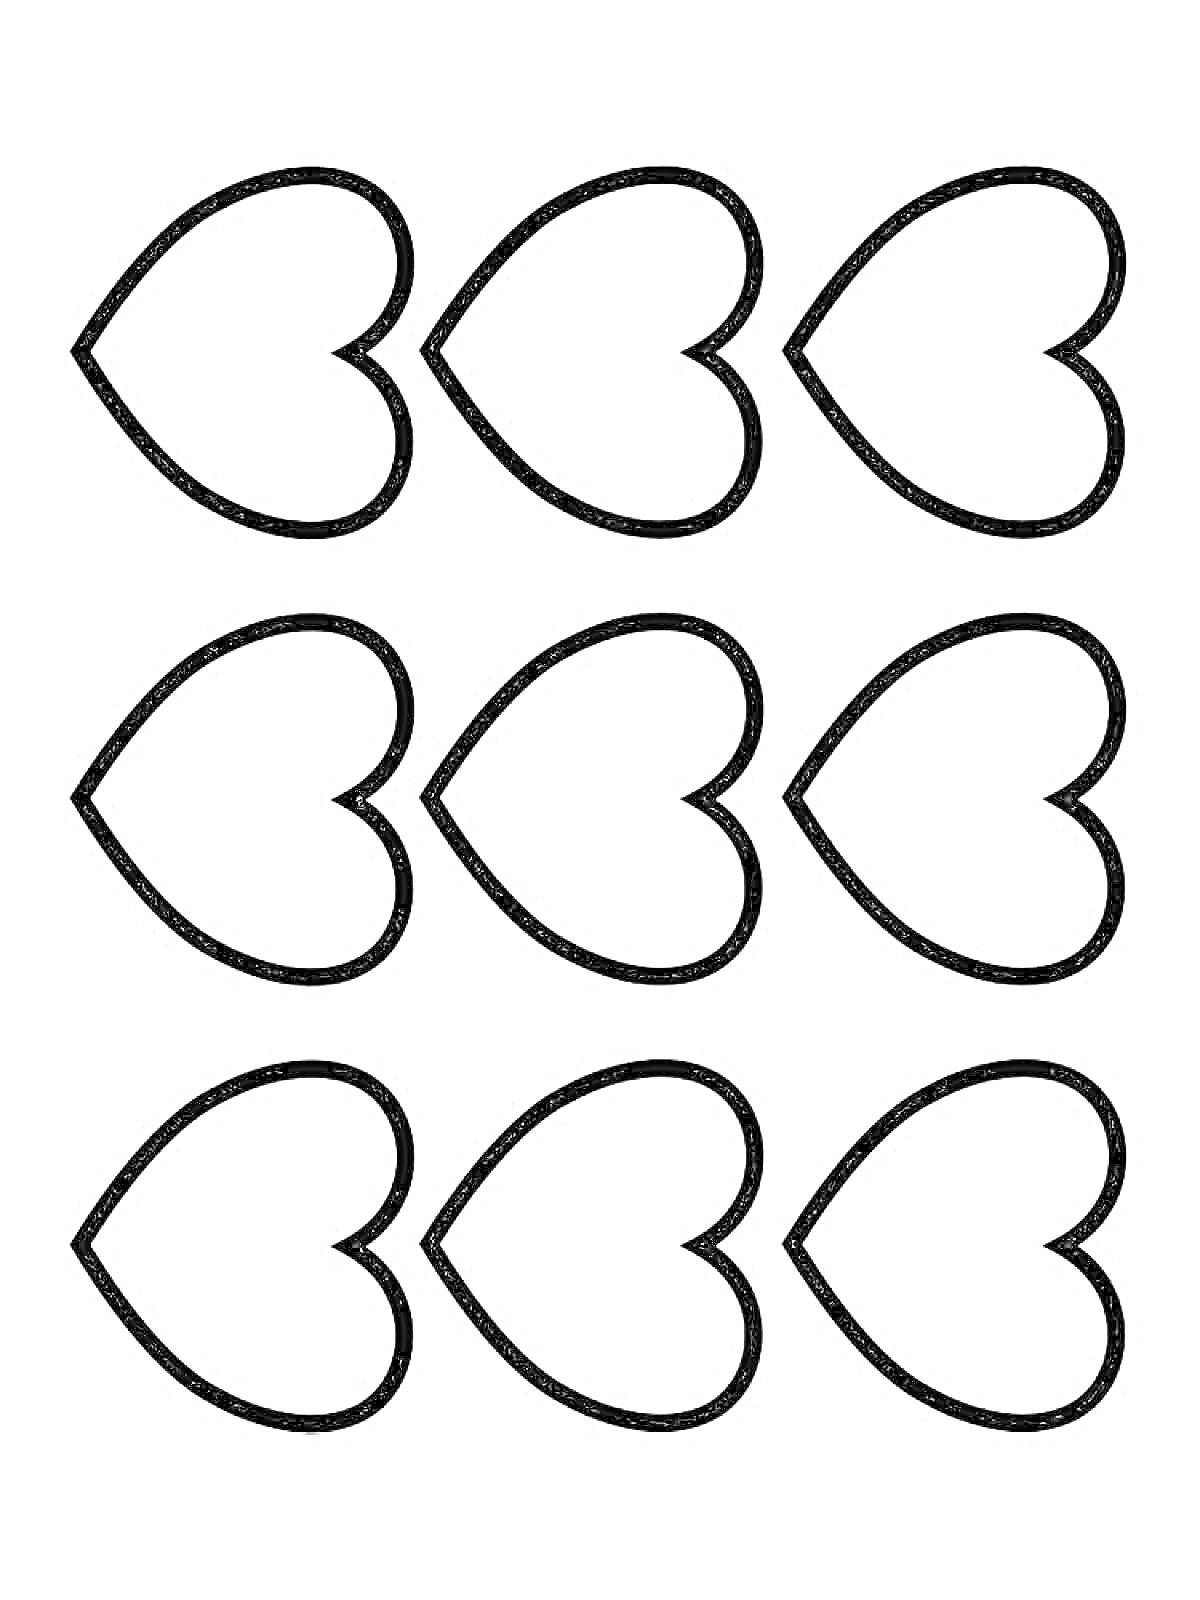 Раскраска Раскраска с восемью сердечками в три ряда